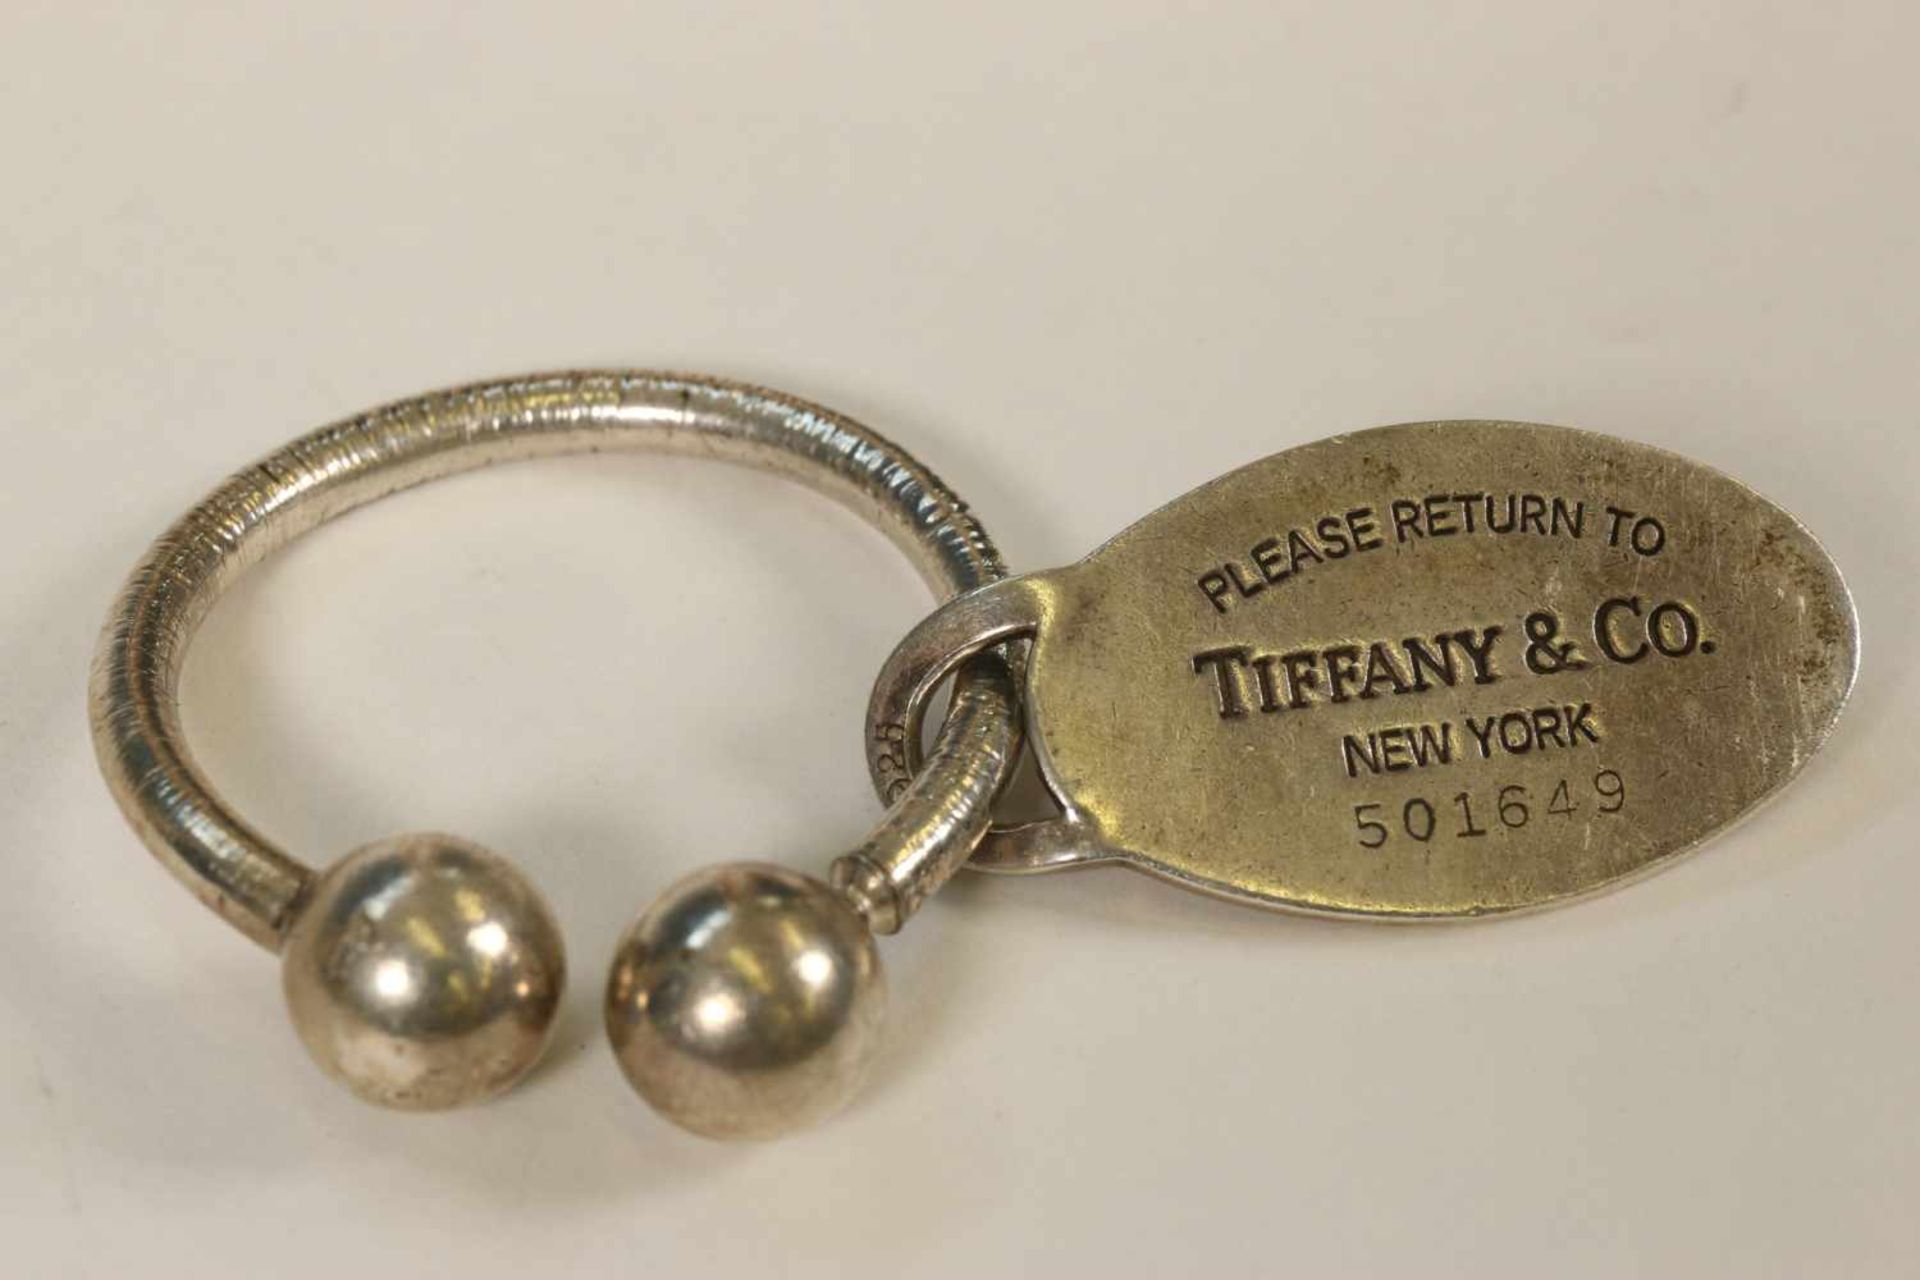 Verenigde staten, Tiffany New York sleutelhanger,sleutelhanger hoefijzervormig met afdraaibare